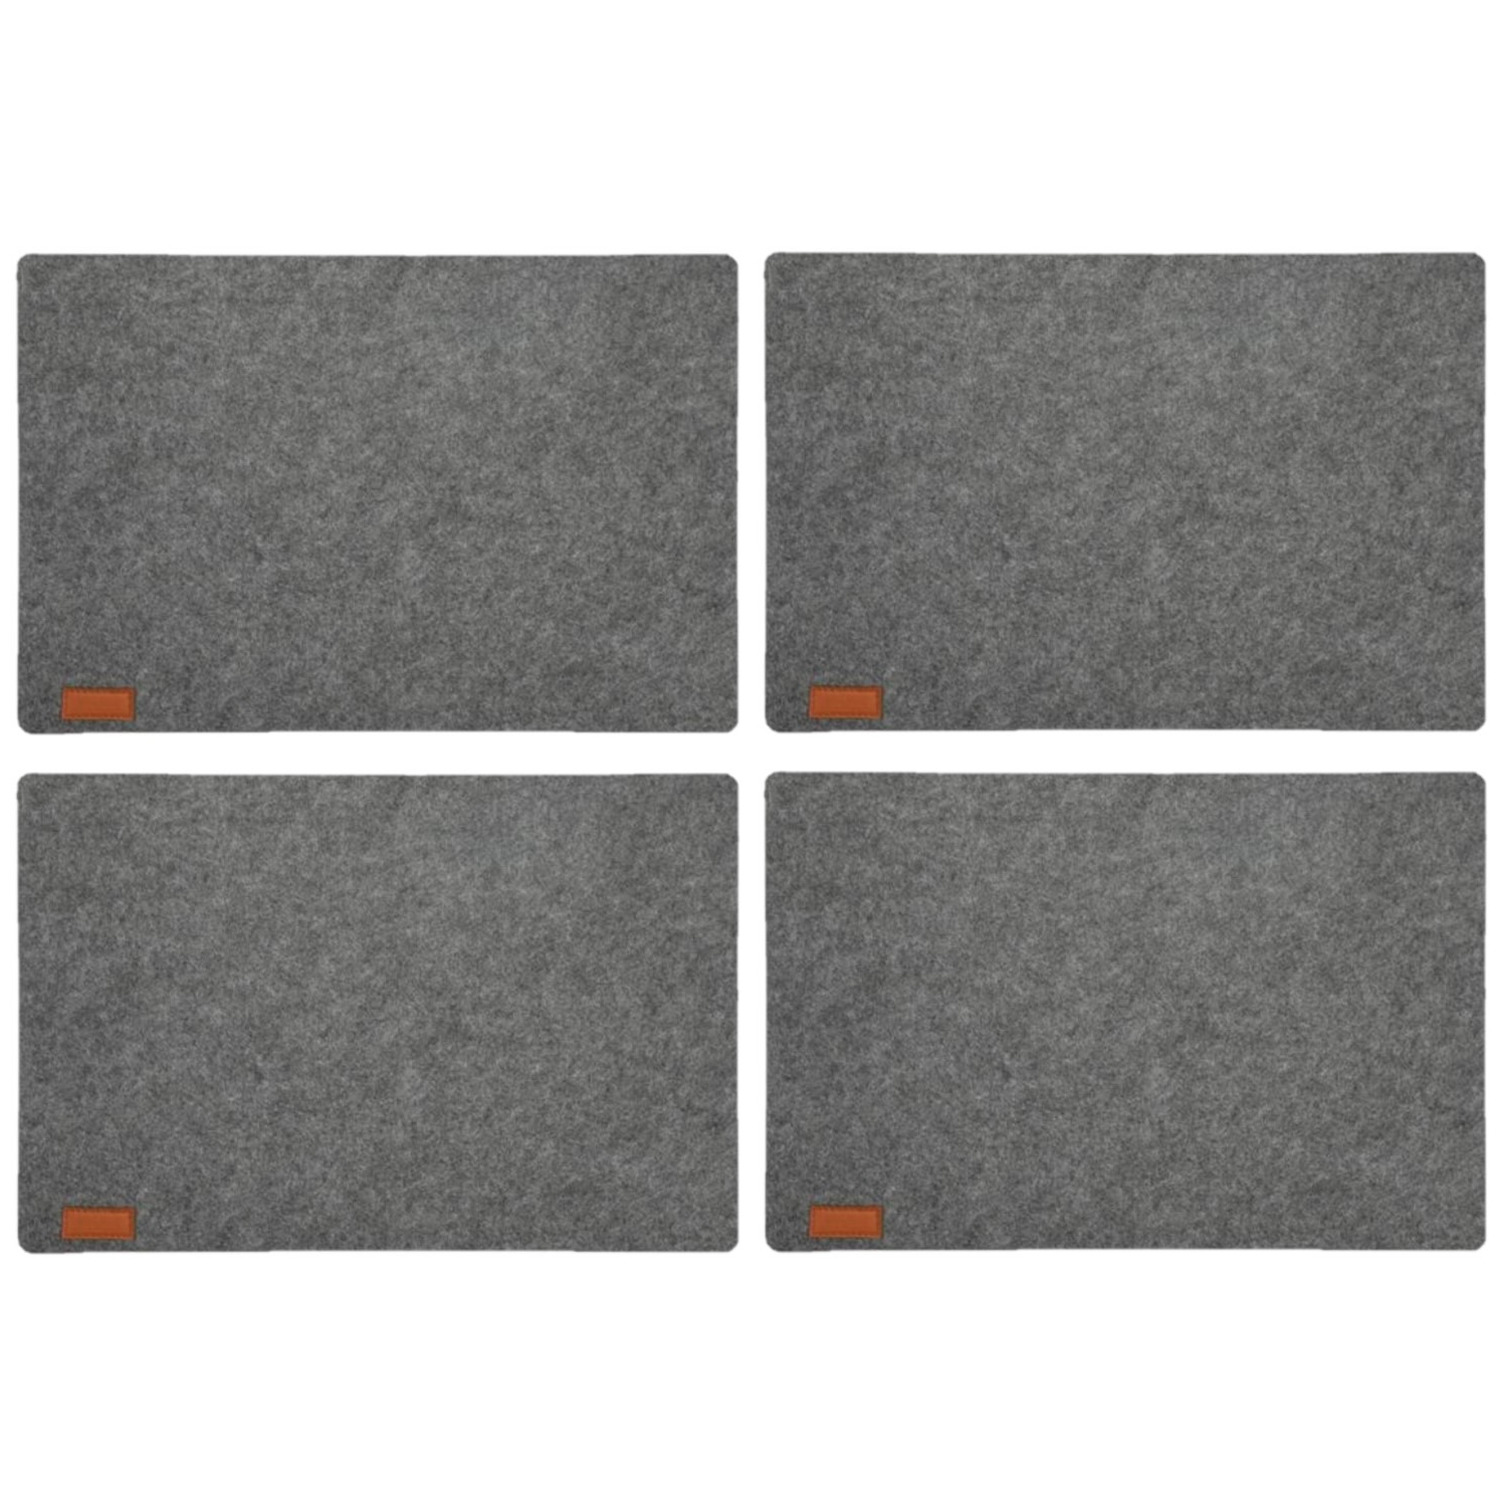 Cepewa 8x stuks rechthoekige placemats met ronde hoeken polyester grijs 30 x 45 cm -